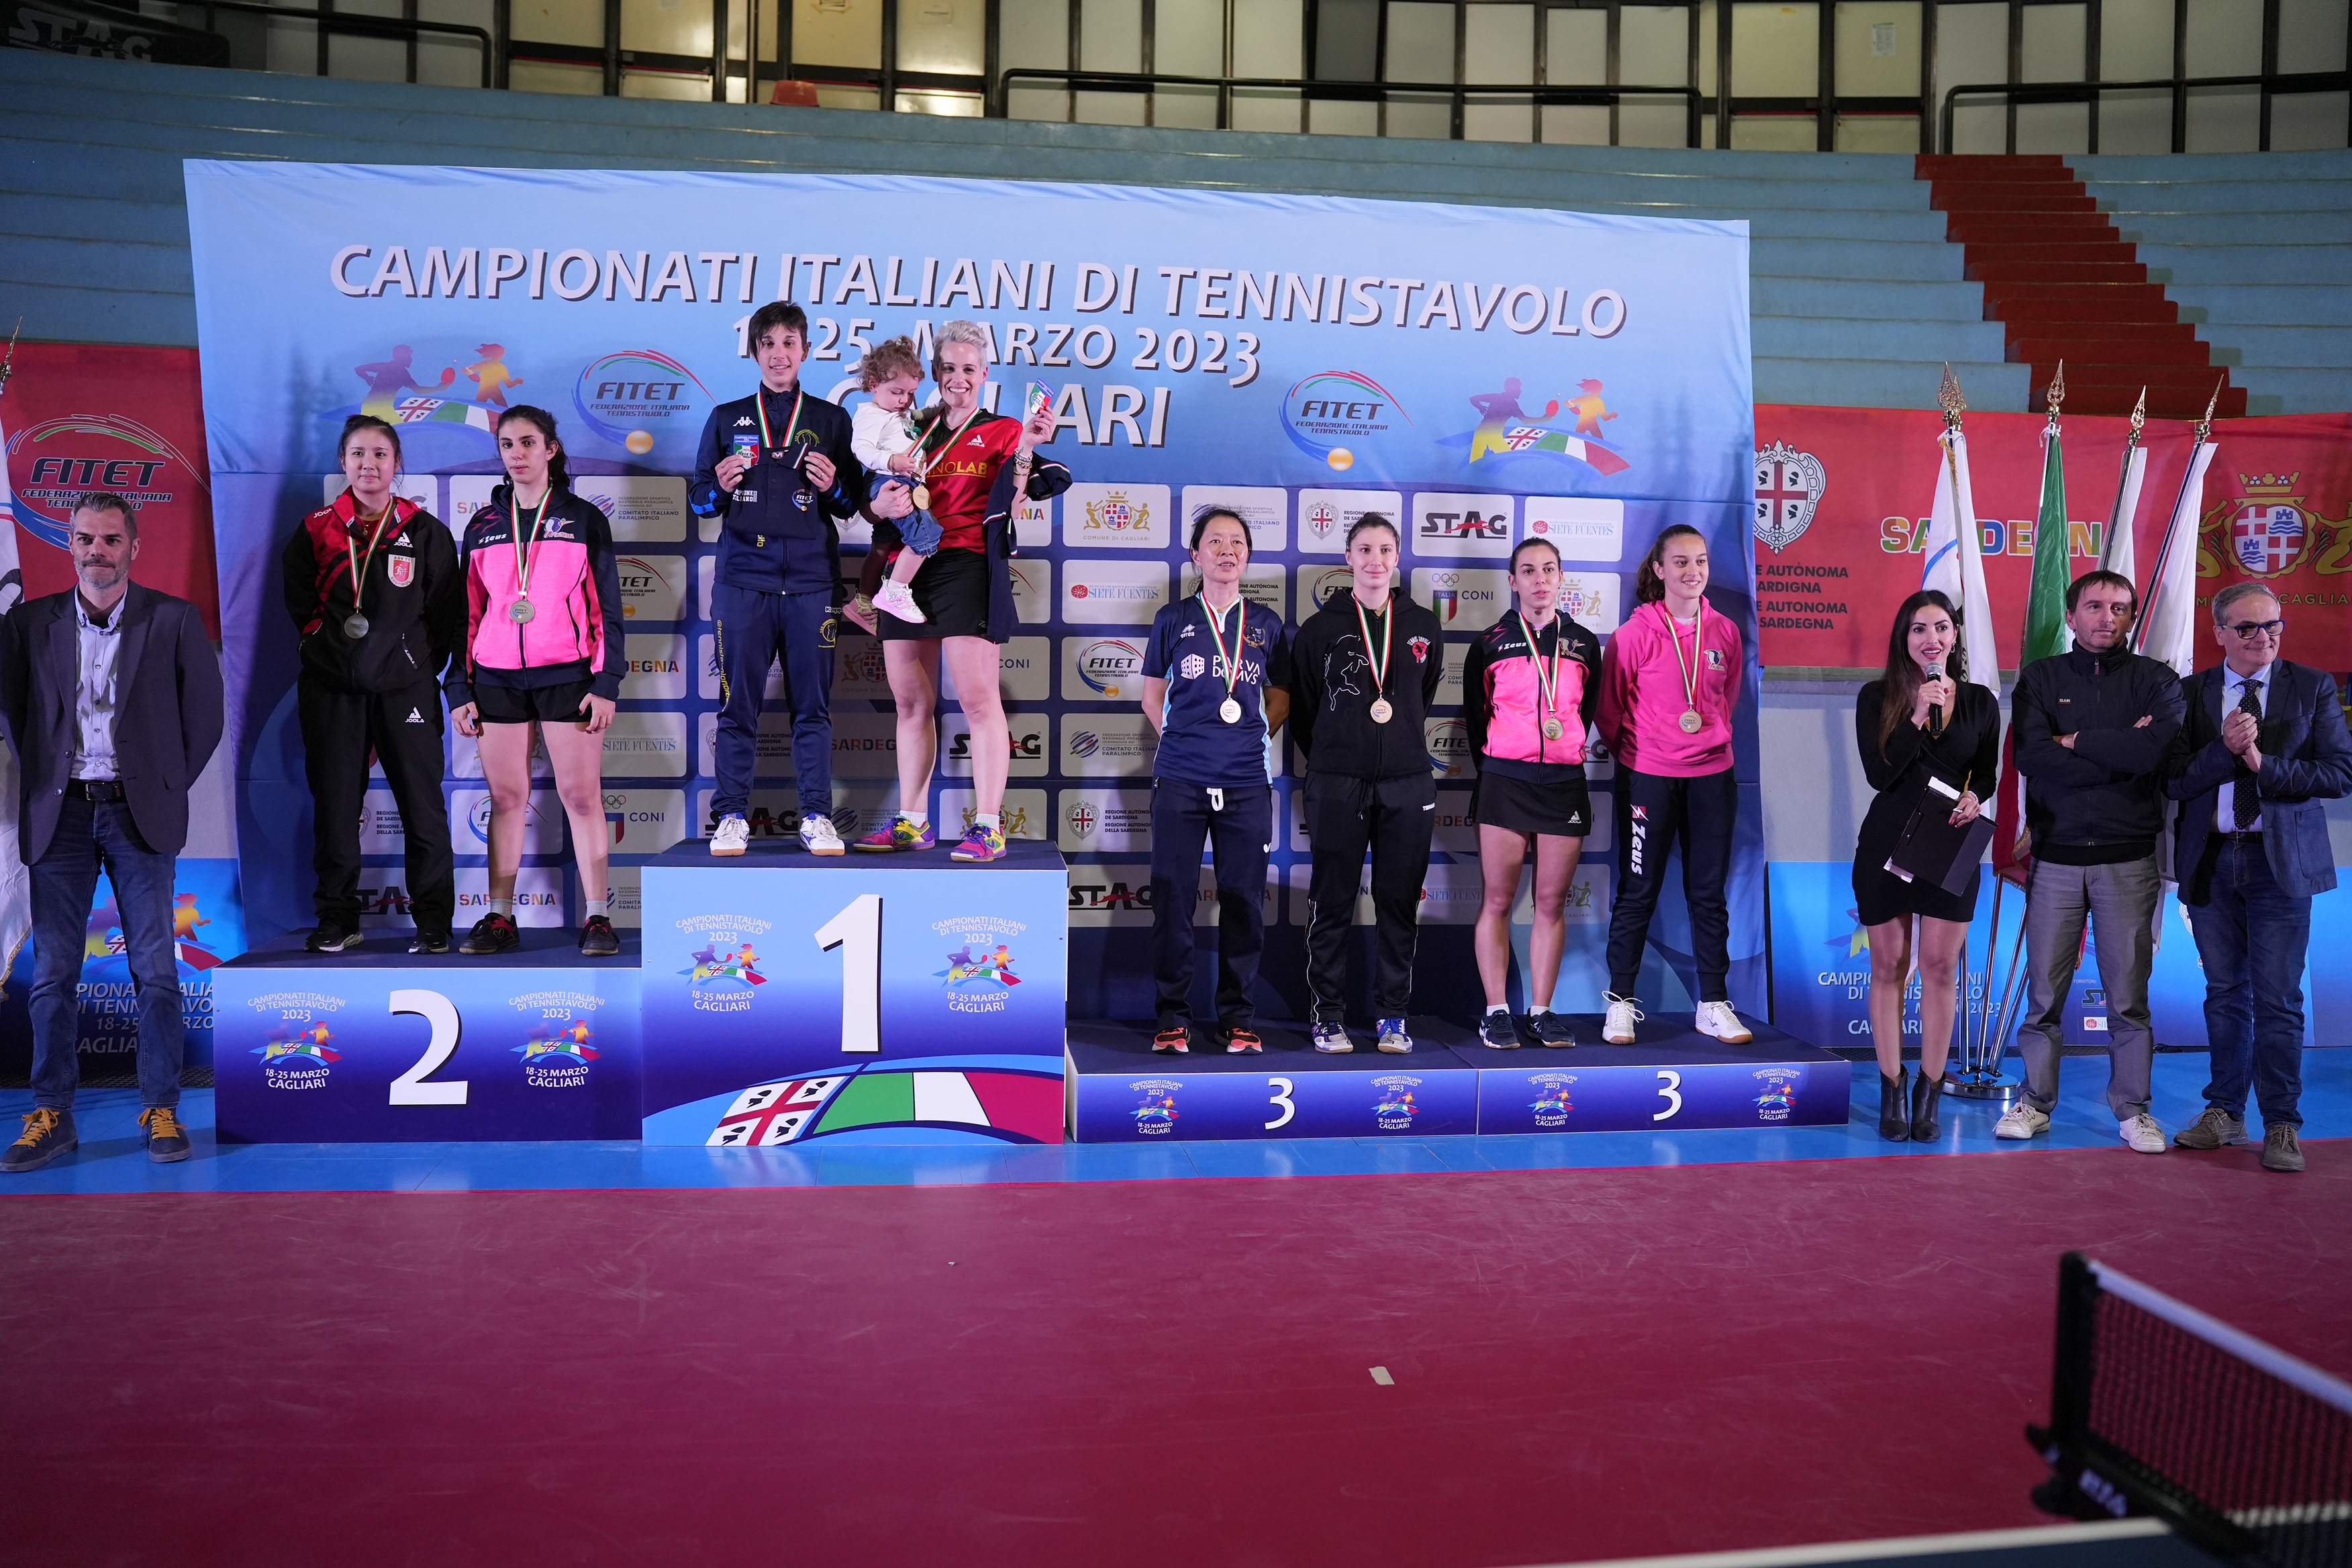 Campionati Italiani di Cagliari 2023 podio del doppio femminile di seconda categoria